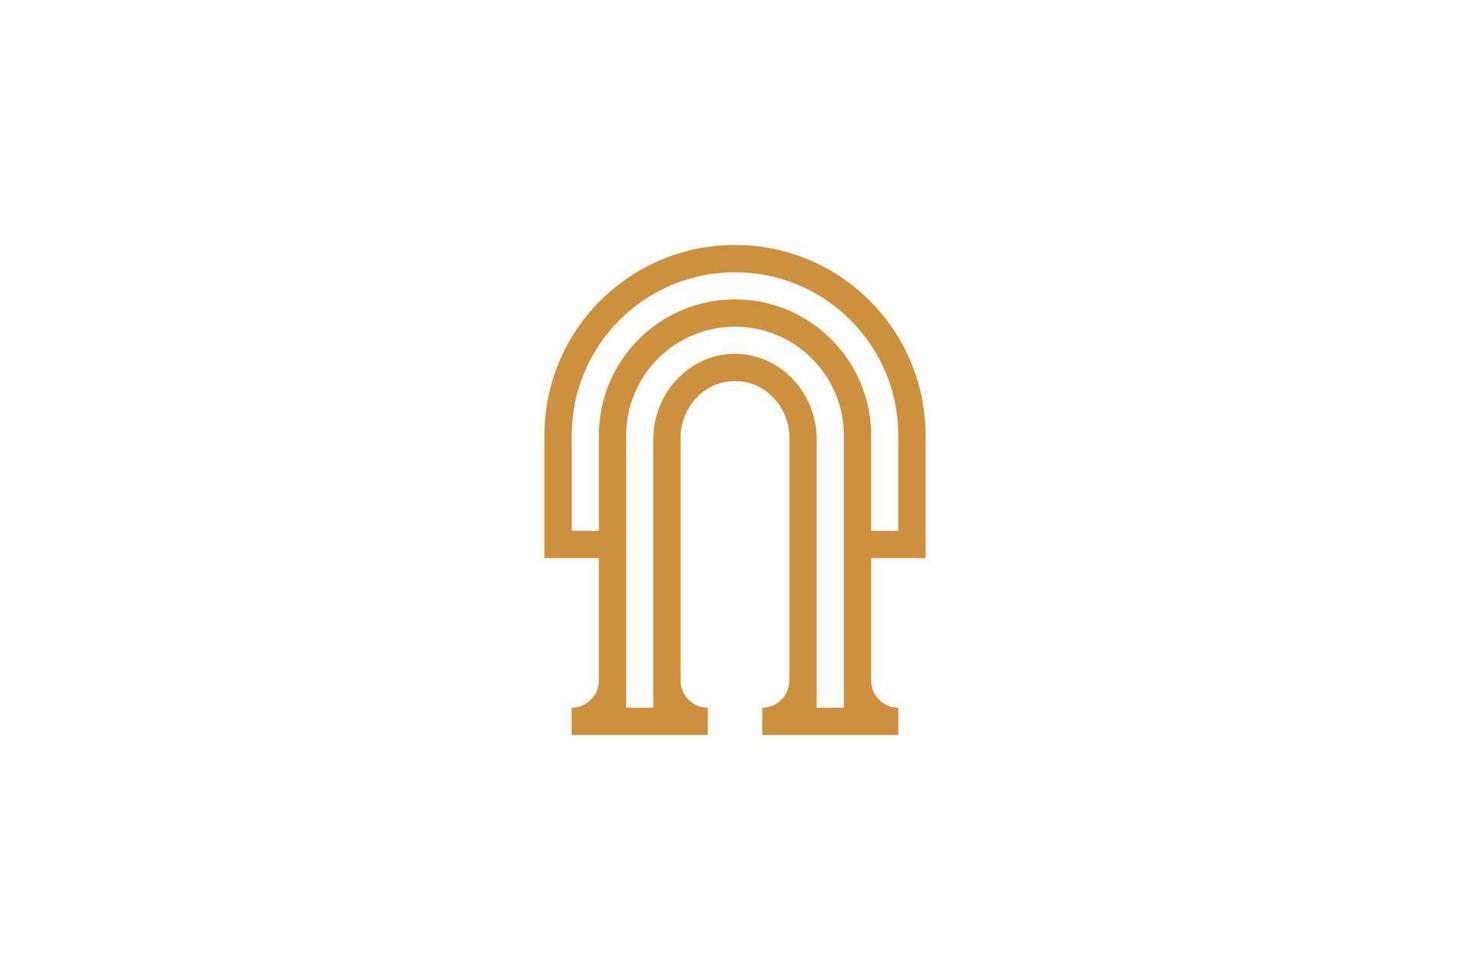 anfängliche p Monoline-Logo-Vorlage vektor